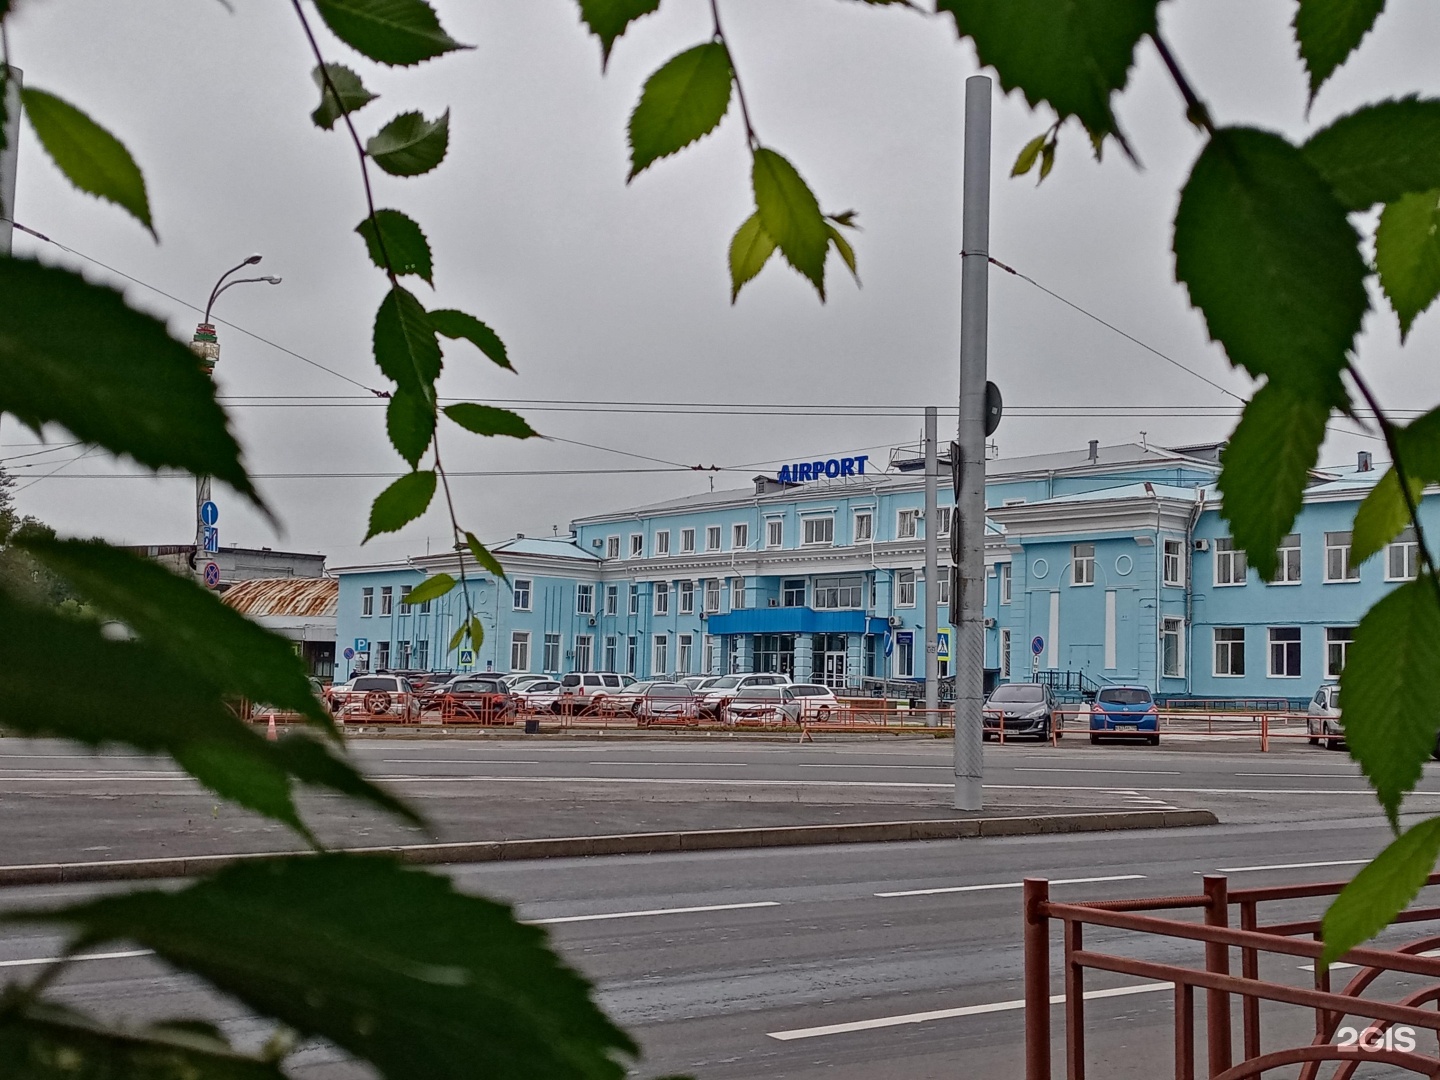 Гостиница аэропорт иркутск